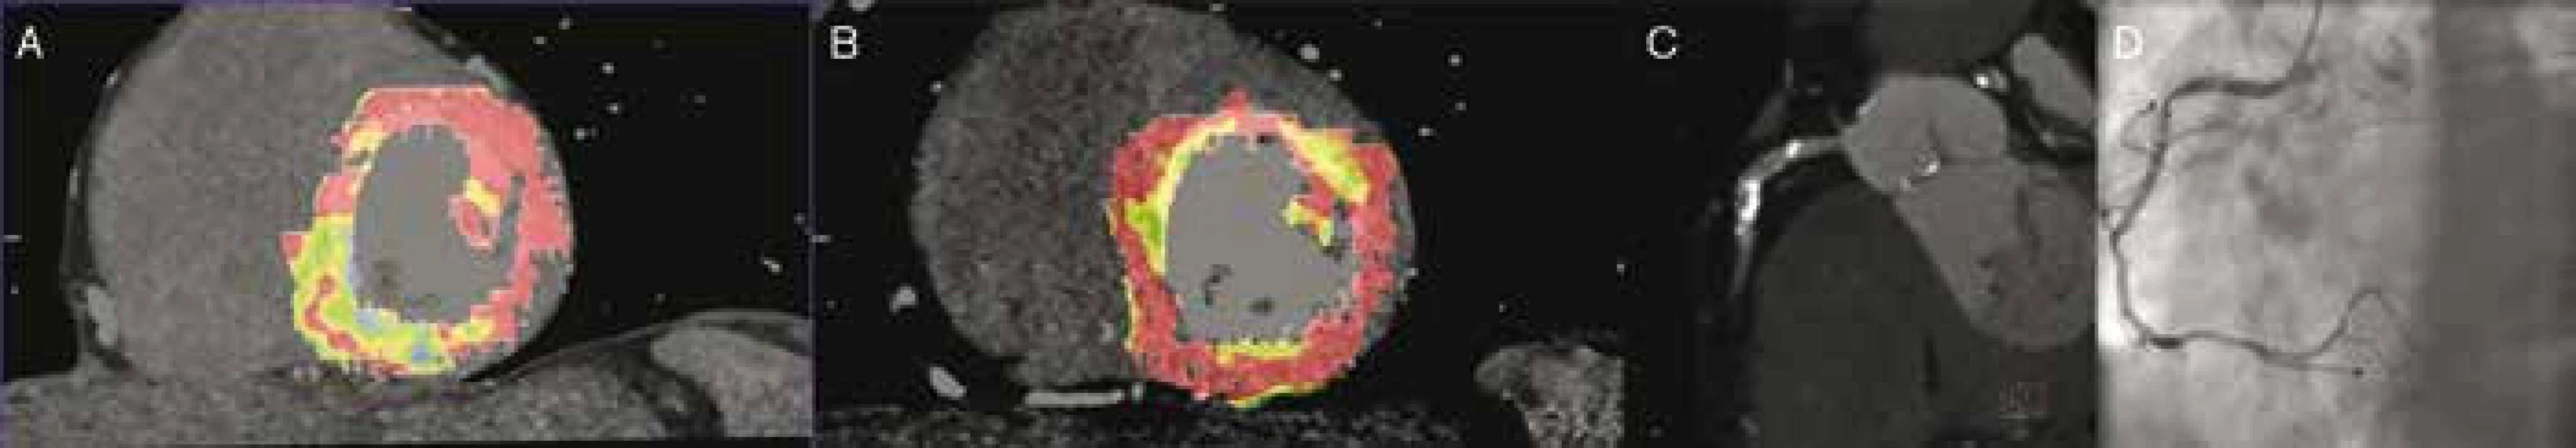 Perfuzní CT + CTA + SKG: asymptomatický pacient bez anamnézy ICHS před pánevní cévní rekonstrukcí. Perfuzní deficit inferoseptální oblasti při zátěžovém perfuzním CT vyšetření (A) a normální perfuze při klidovém vyšetření (B). Příčinou zátěží podmíněné hypoperfuze byla stenóza proximální ACD (CT angiografie – C, koronarografie – D).